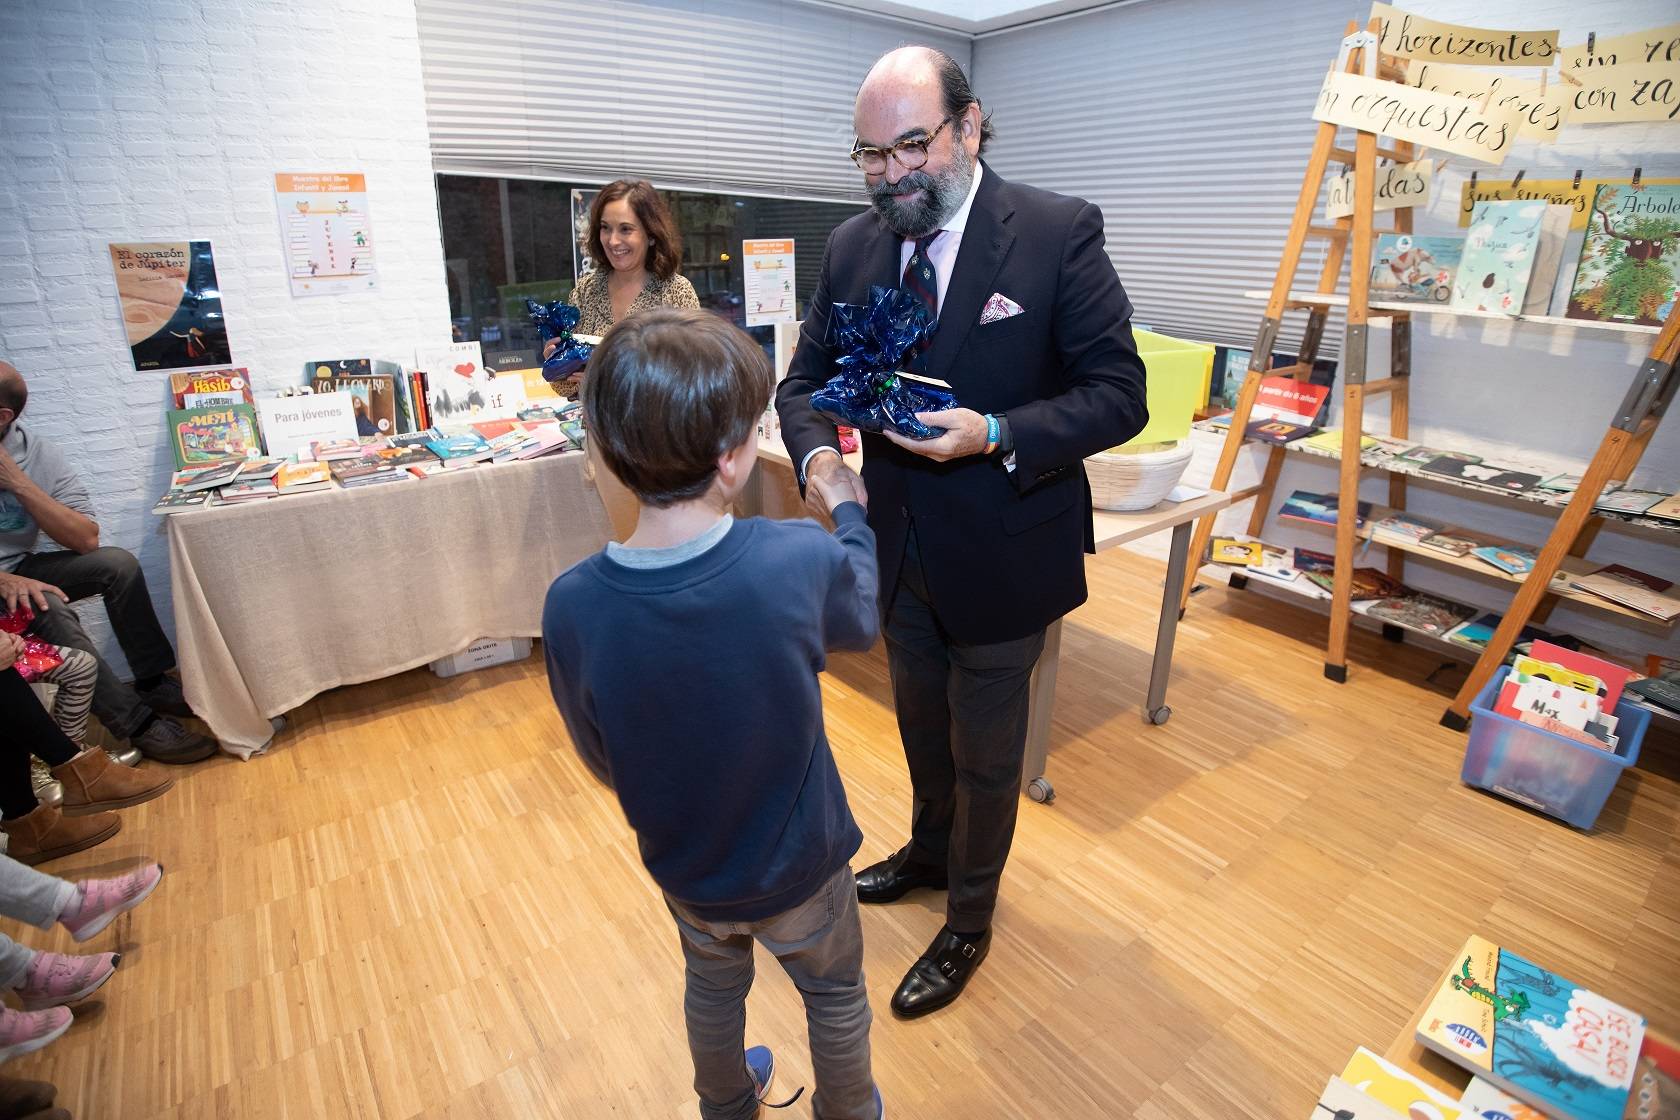 El concejal de Cultura entrega un premio a uno de los participantes del juego "Pasaporte Lector".